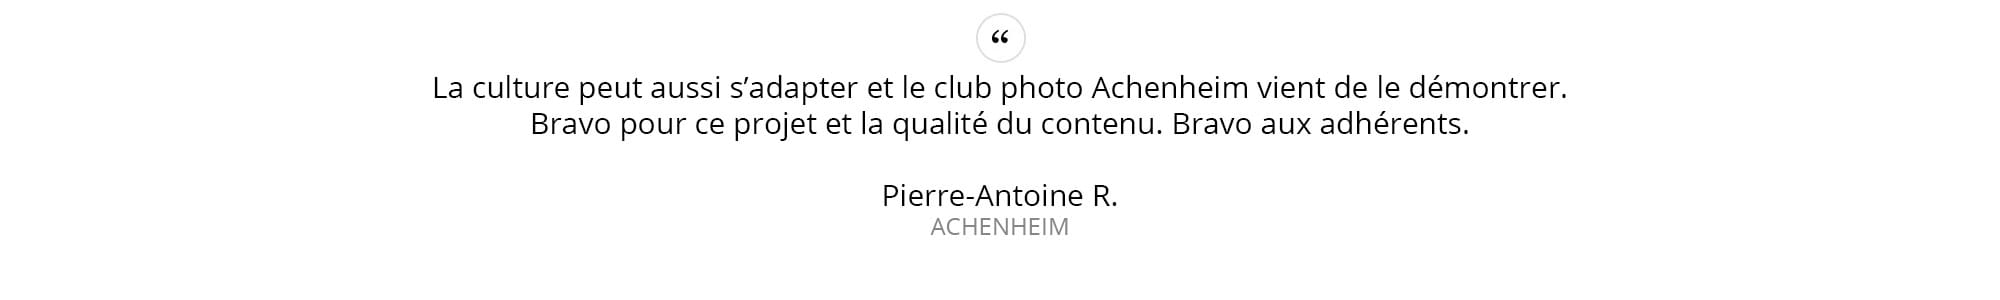 Pierre-Antoine-R.---ACHENHEIM